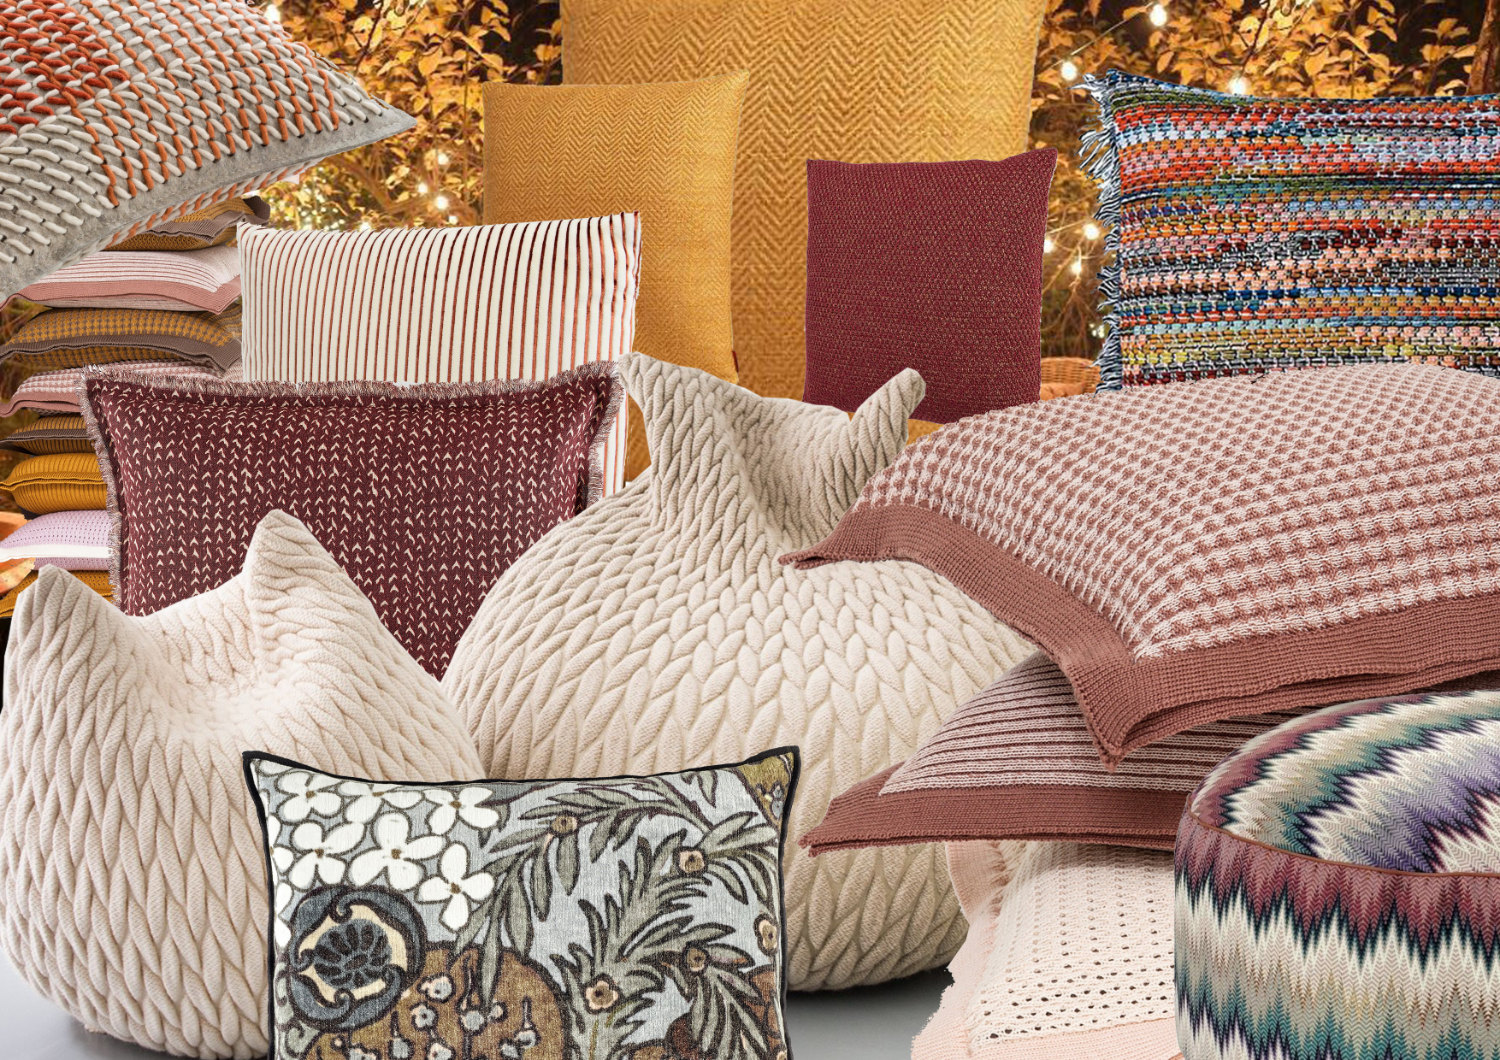 Selezione palette e tessuti per una composizione di cuscini, a cura dello studio Elles Interior Design.